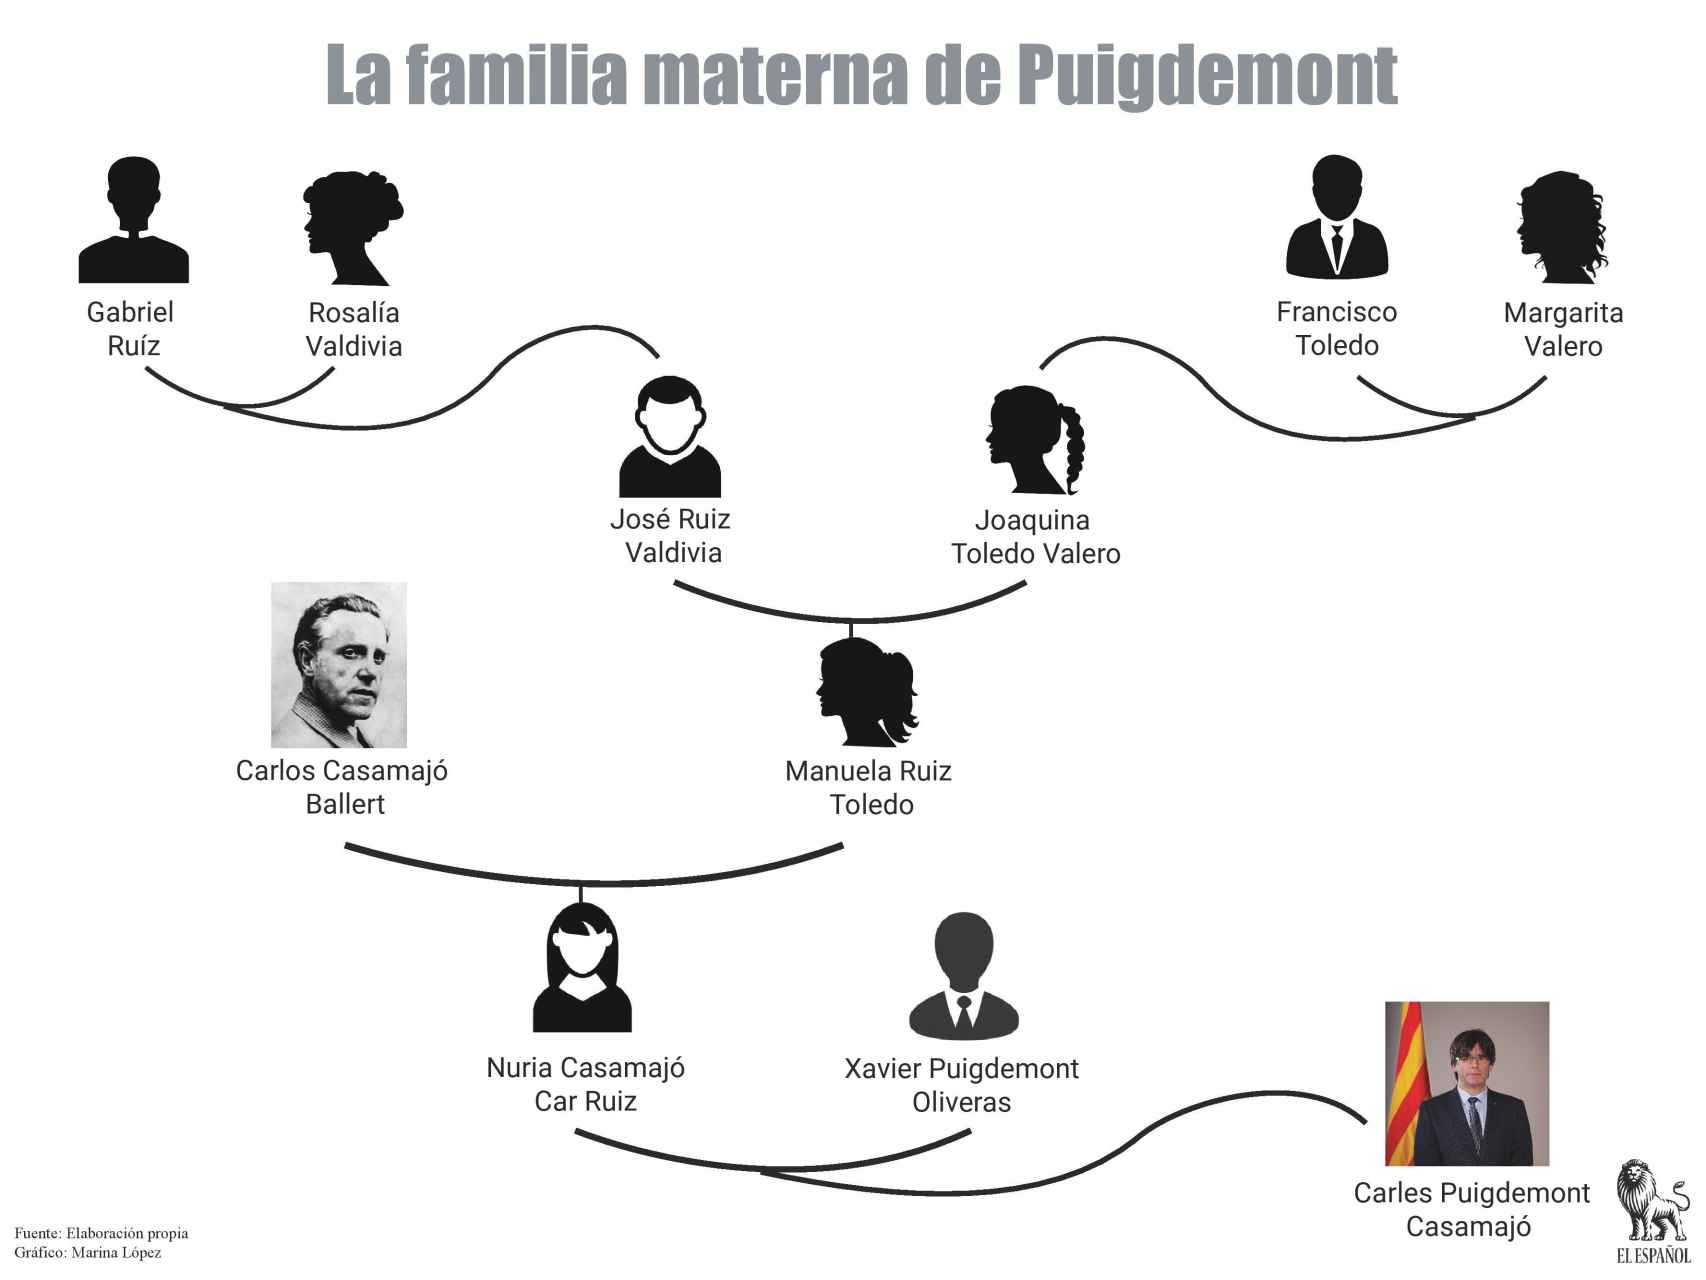 Árbol genealógico de la familia materna de Carles Puigdemont Casamajó.